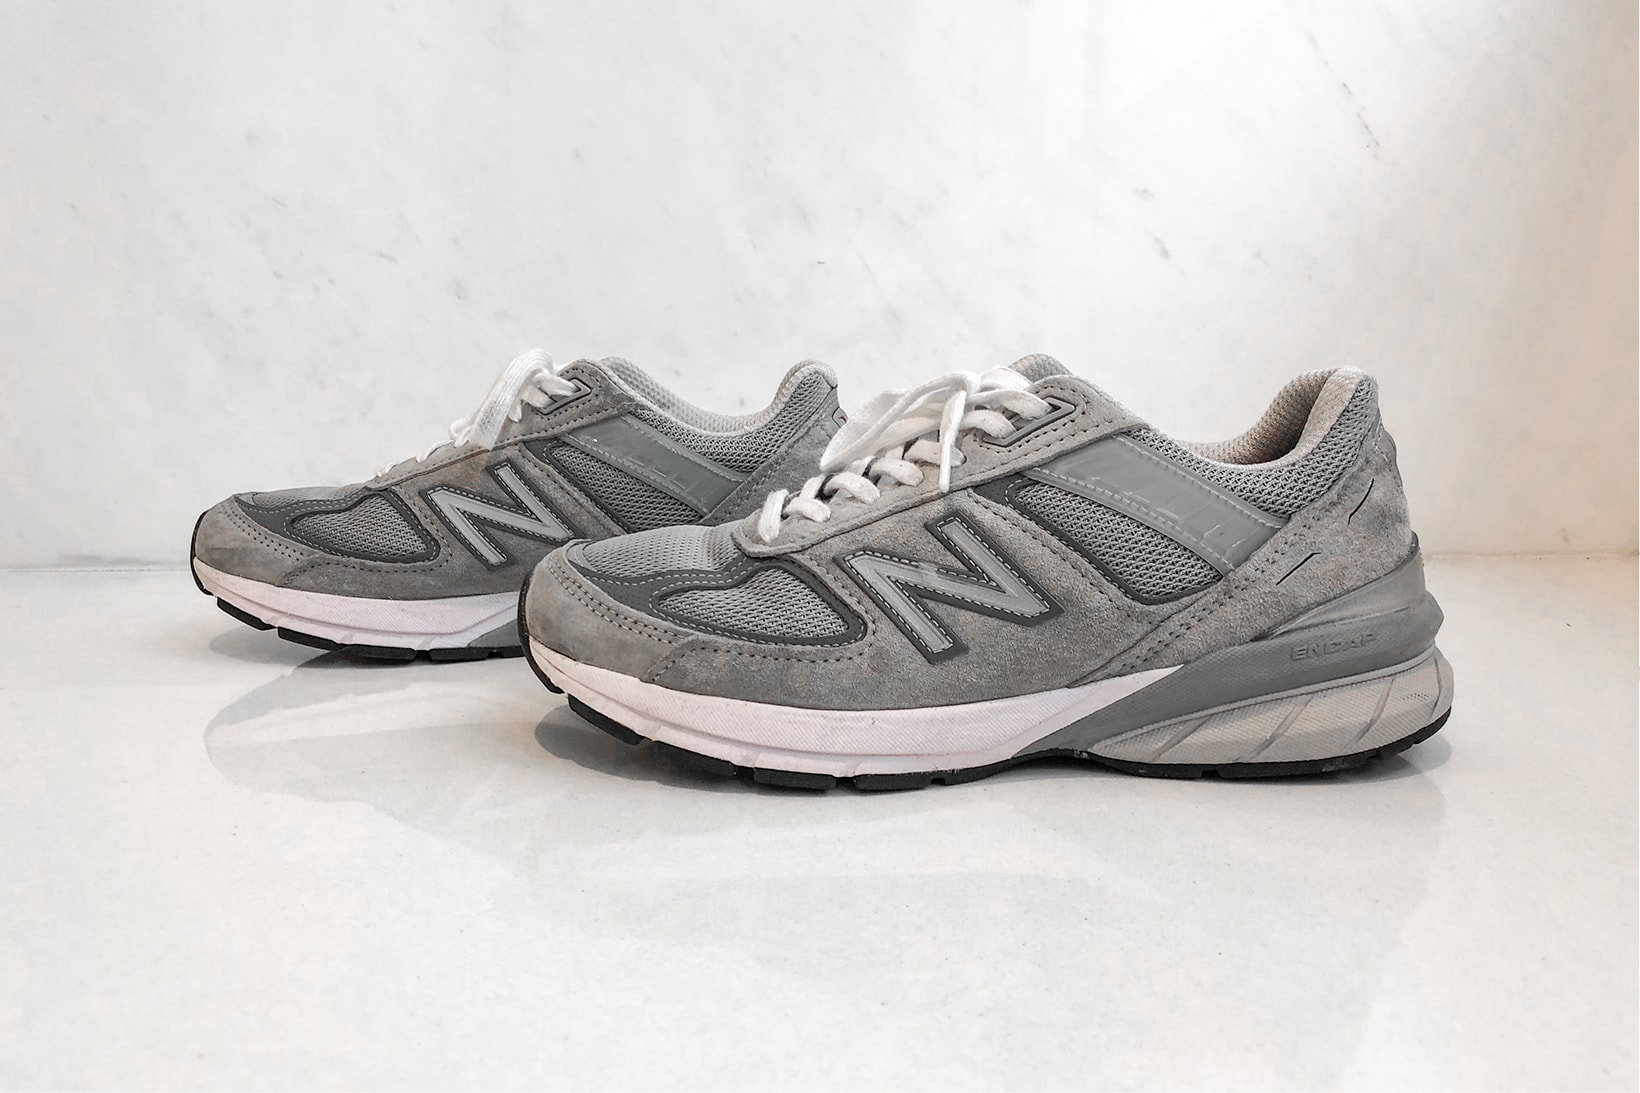 New Balance 990v5 Sneakers Footwear Shoes Kicks Sneakerhead Grey Castlerock